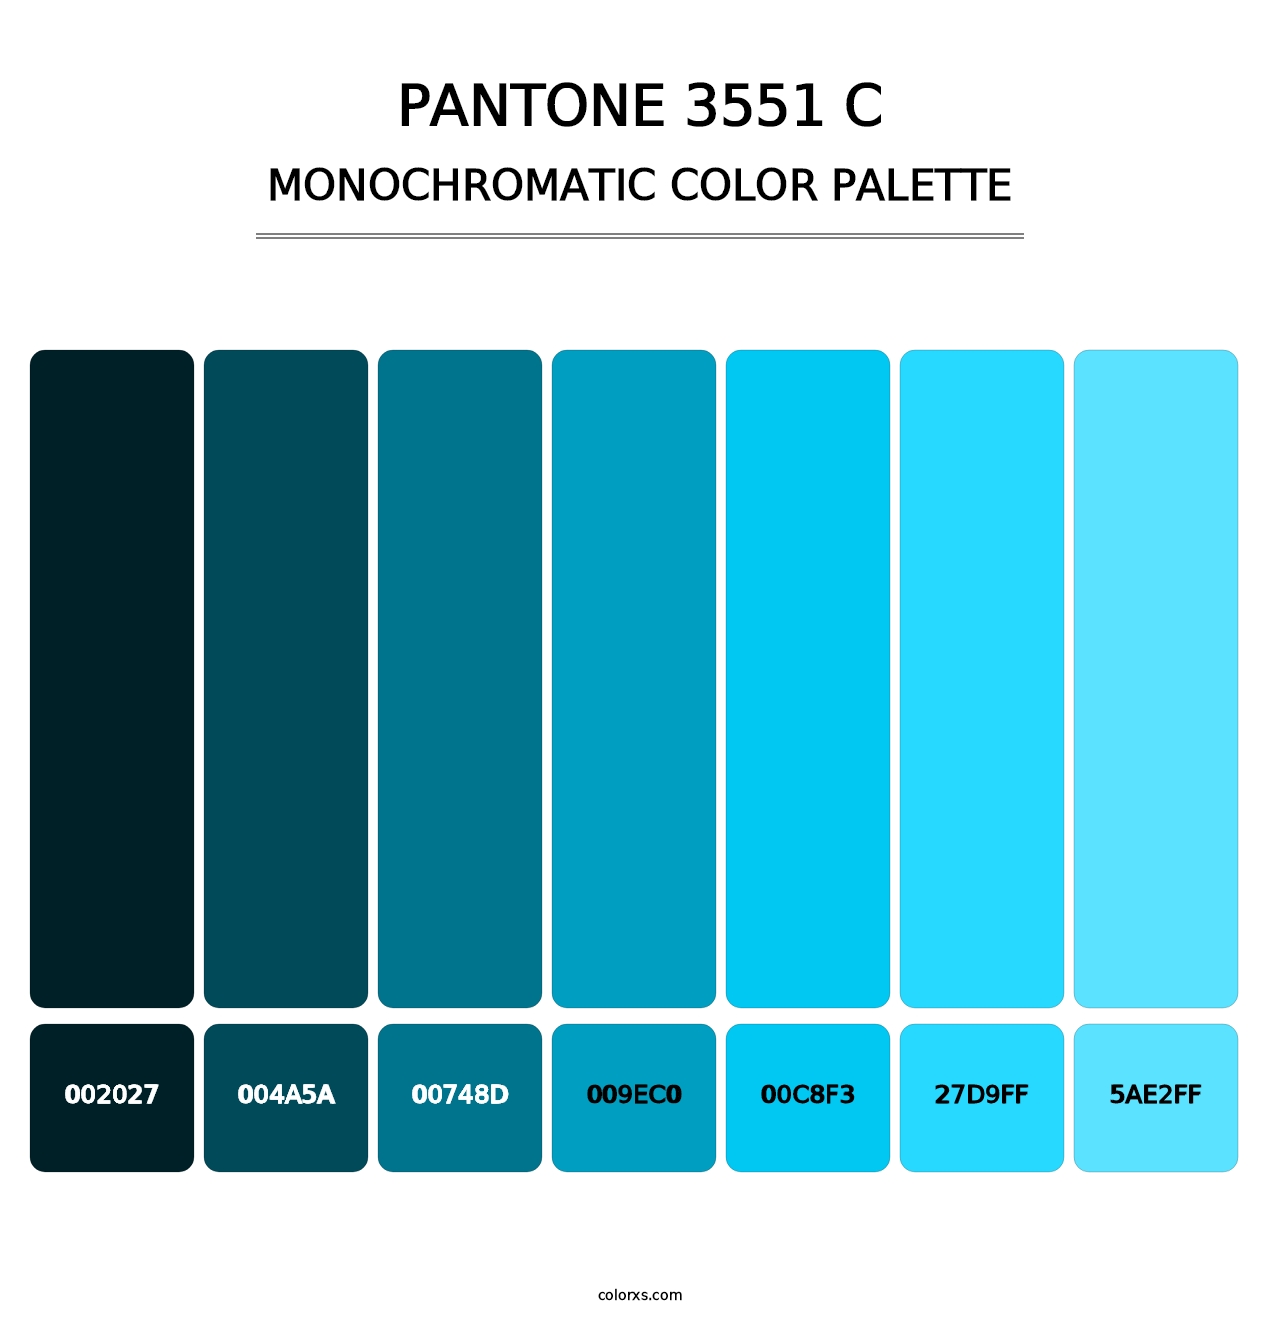 PANTONE 3551 C - Monochromatic Color Palette